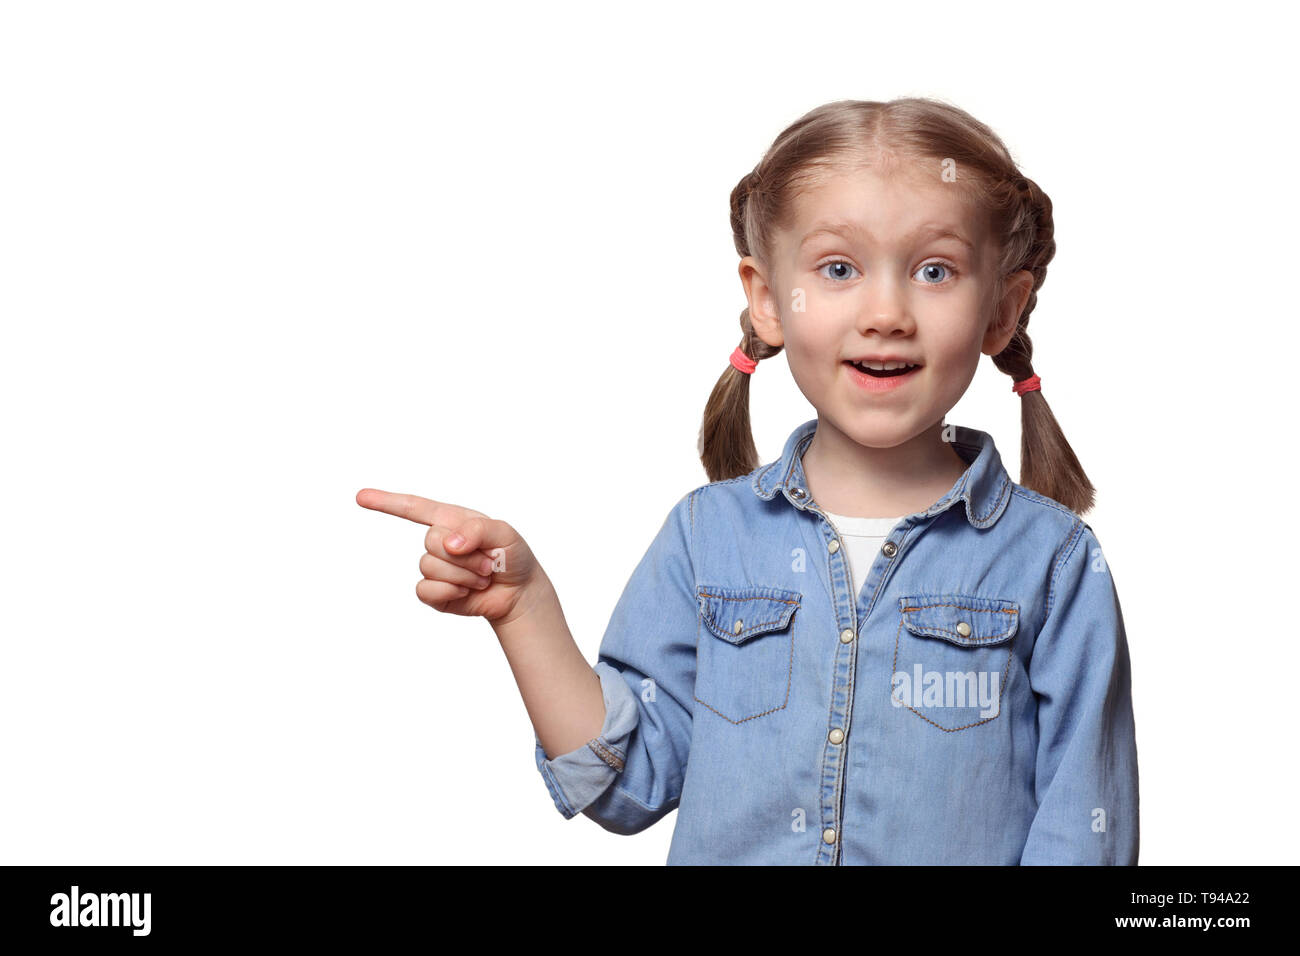 Das Kind zeigt auf etwas. Schöne Mädchen mit Zöpfen Punkten freudig mit einem Finger nach oben. Jugendlicher in einem Jeanshemd. Stockfoto